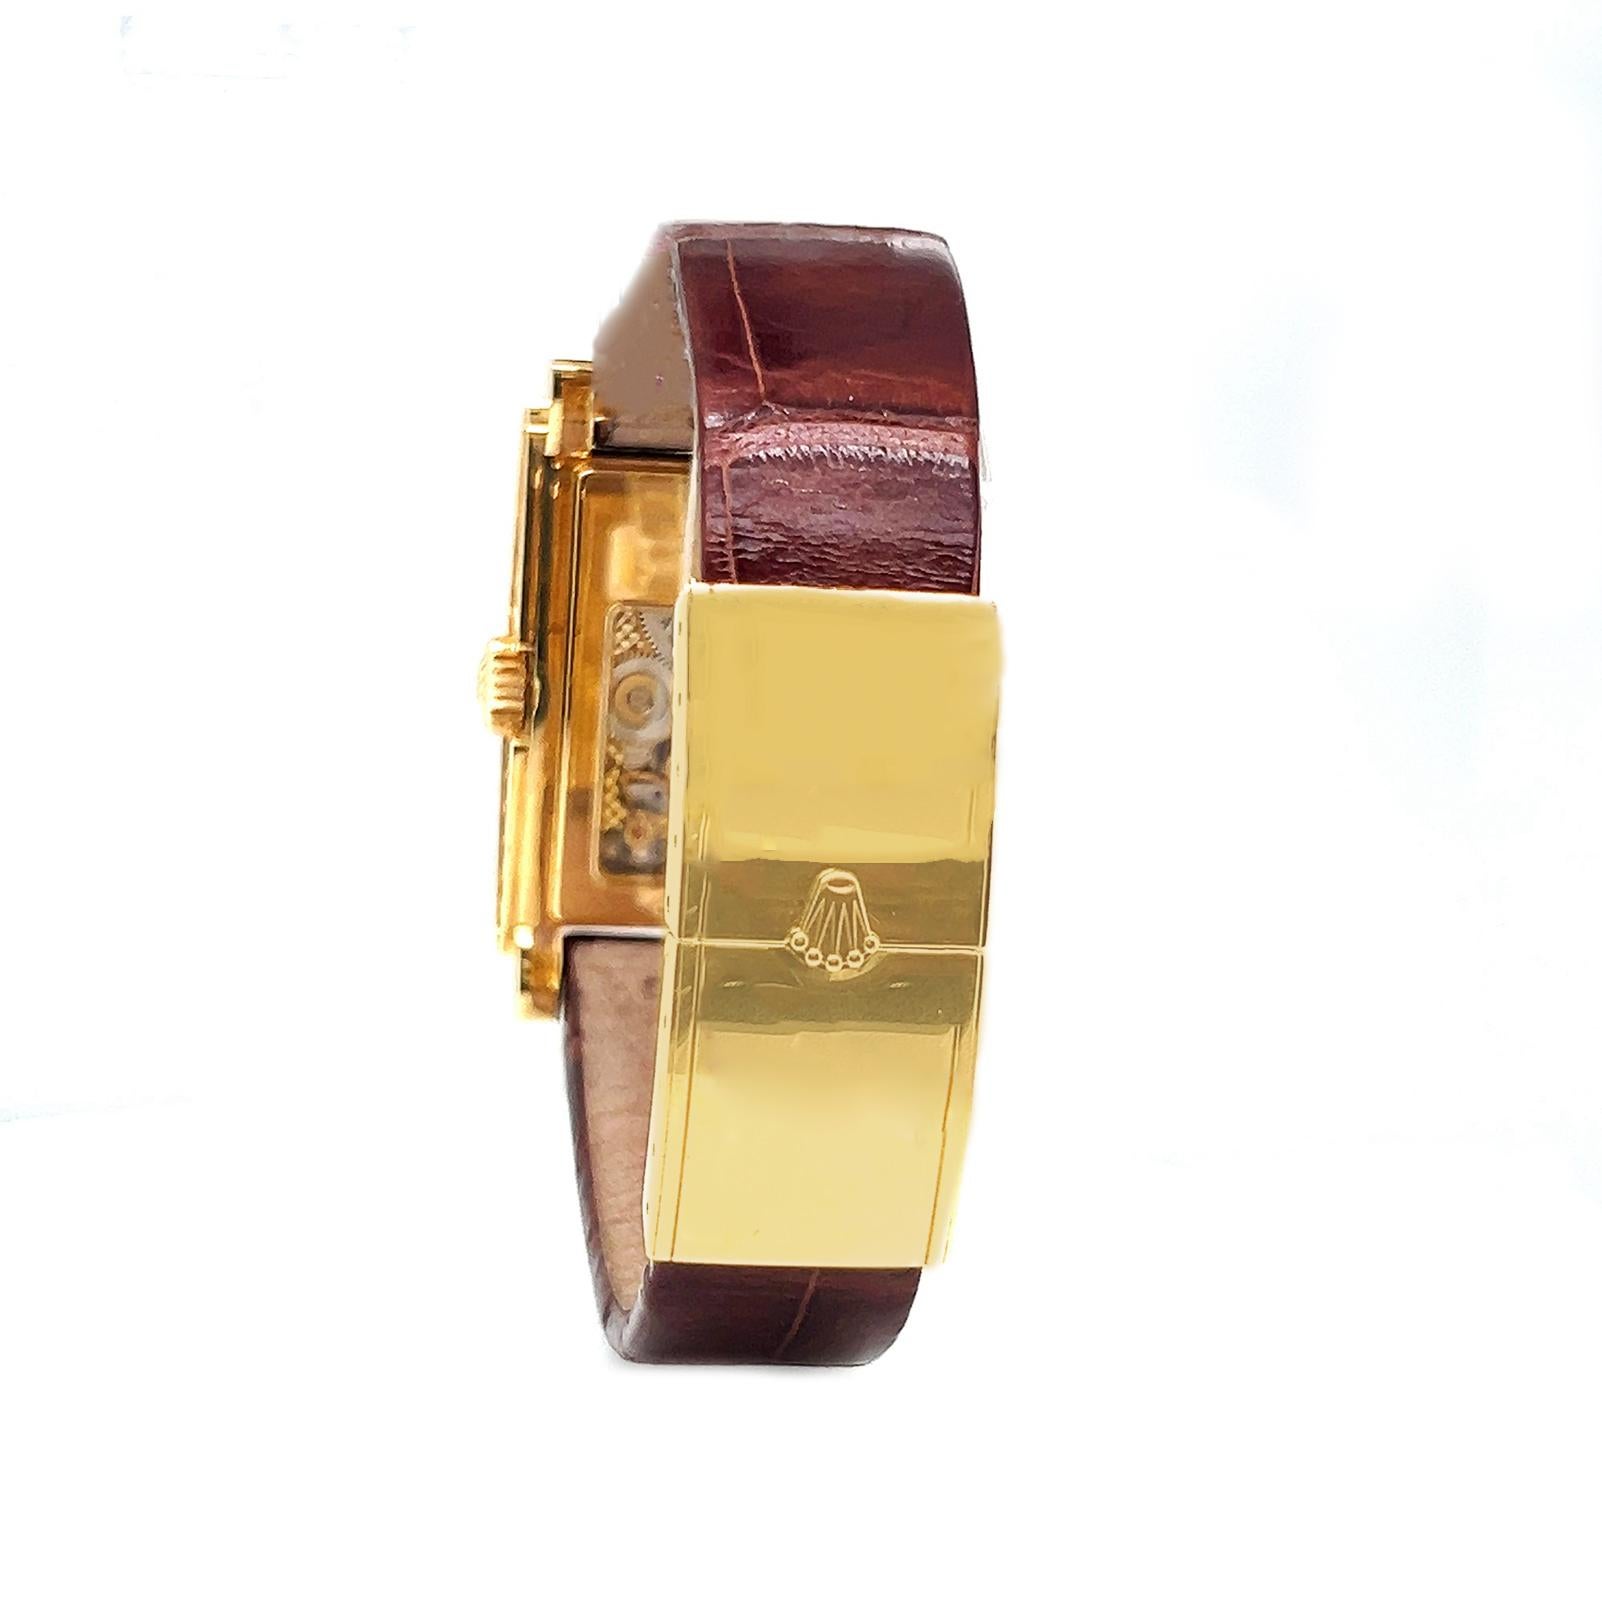 Rolex Prince Cellini Unisex Herren Damen 18K Gelbgold Uhr 5440/8 

Beschreibung:
Erhöhen Sie Ihren Stil mit der zeitlosen Eleganz der Rolex Prince Cellini Herrenuhr aus 18 Karat Gelbgold 5440/8. Dieser exquisite Zeitmesser verfügt über einen